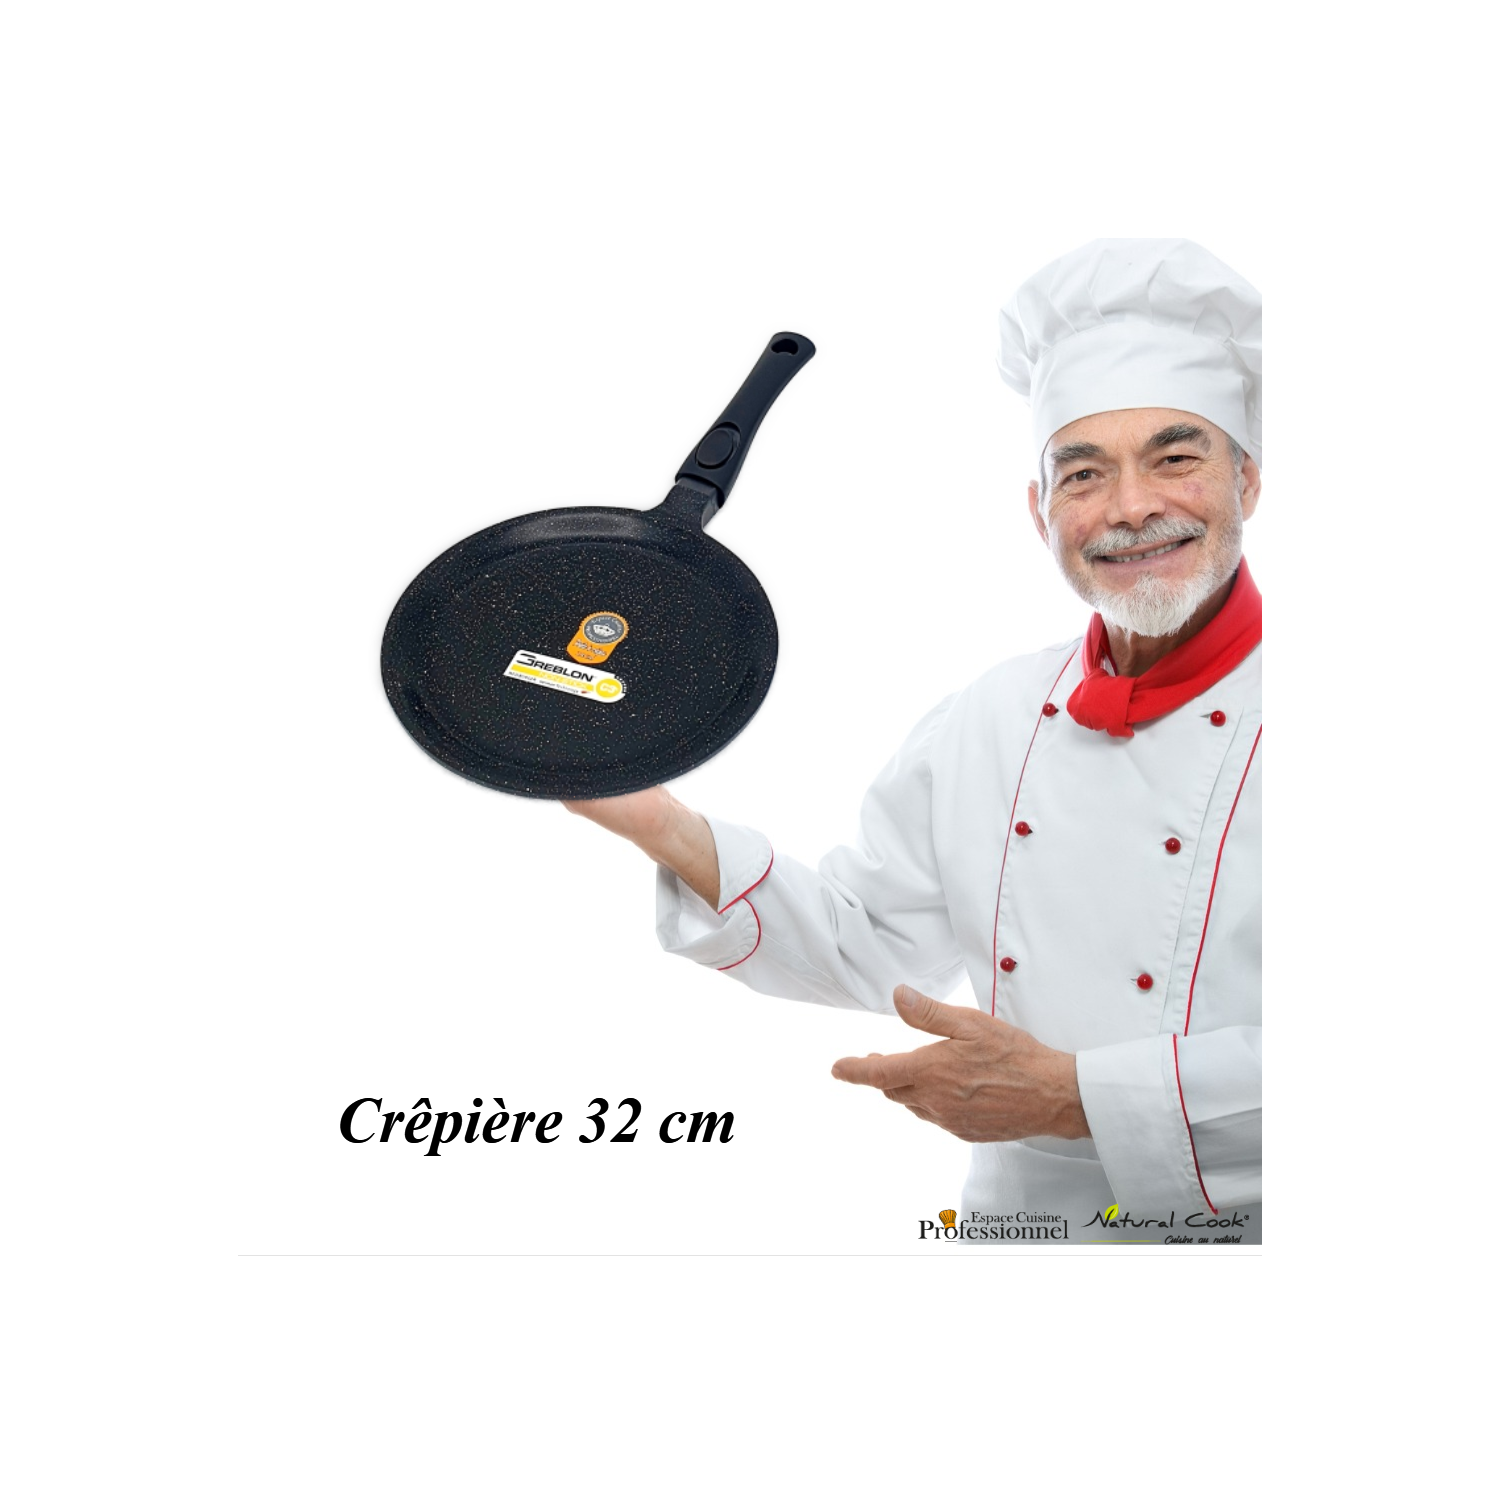 Crêpière 32 cm Espace Cuisine Pro collection 2022